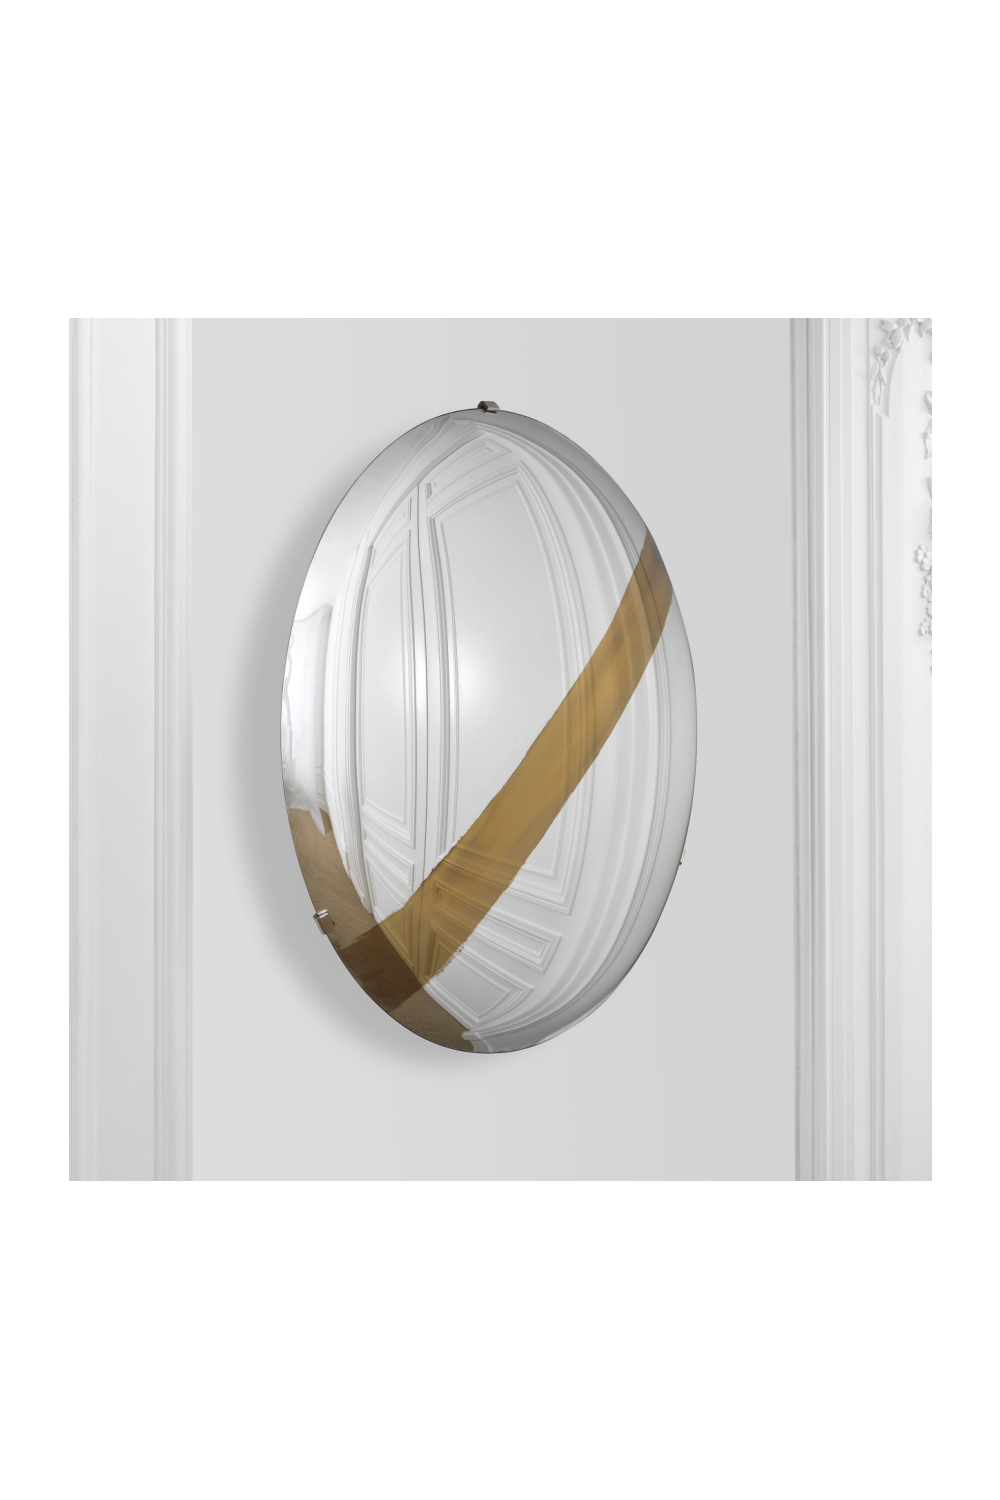 Convex Mirror Wall Plate | Eichholtz Cleveland | OROA